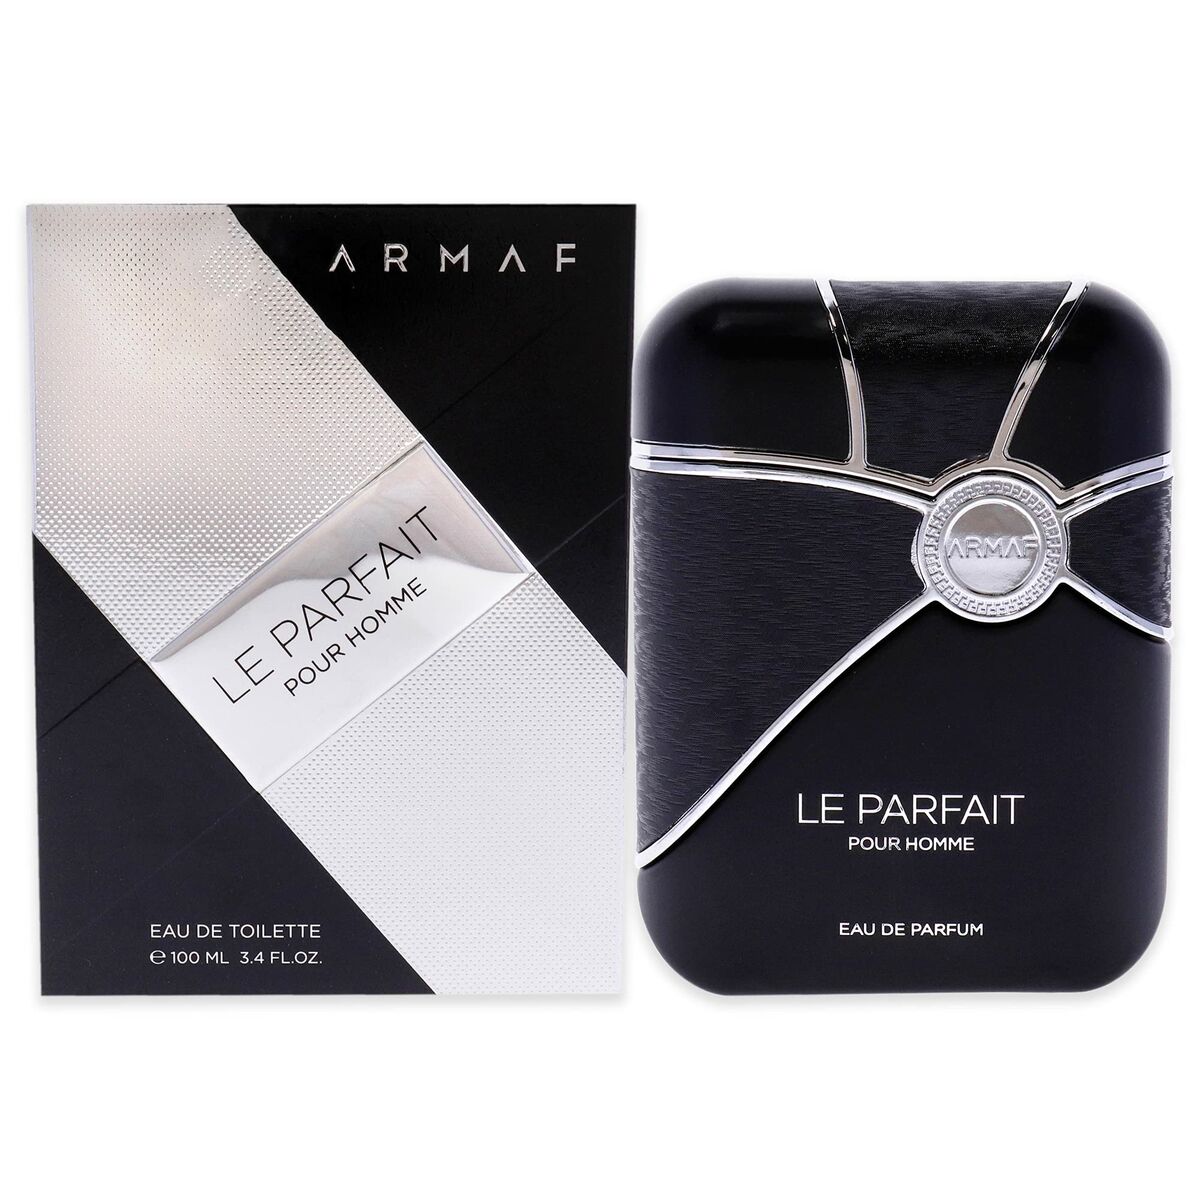 Perfume Hombre Armaf EDT 100 ml Le Parfait Pour Homme